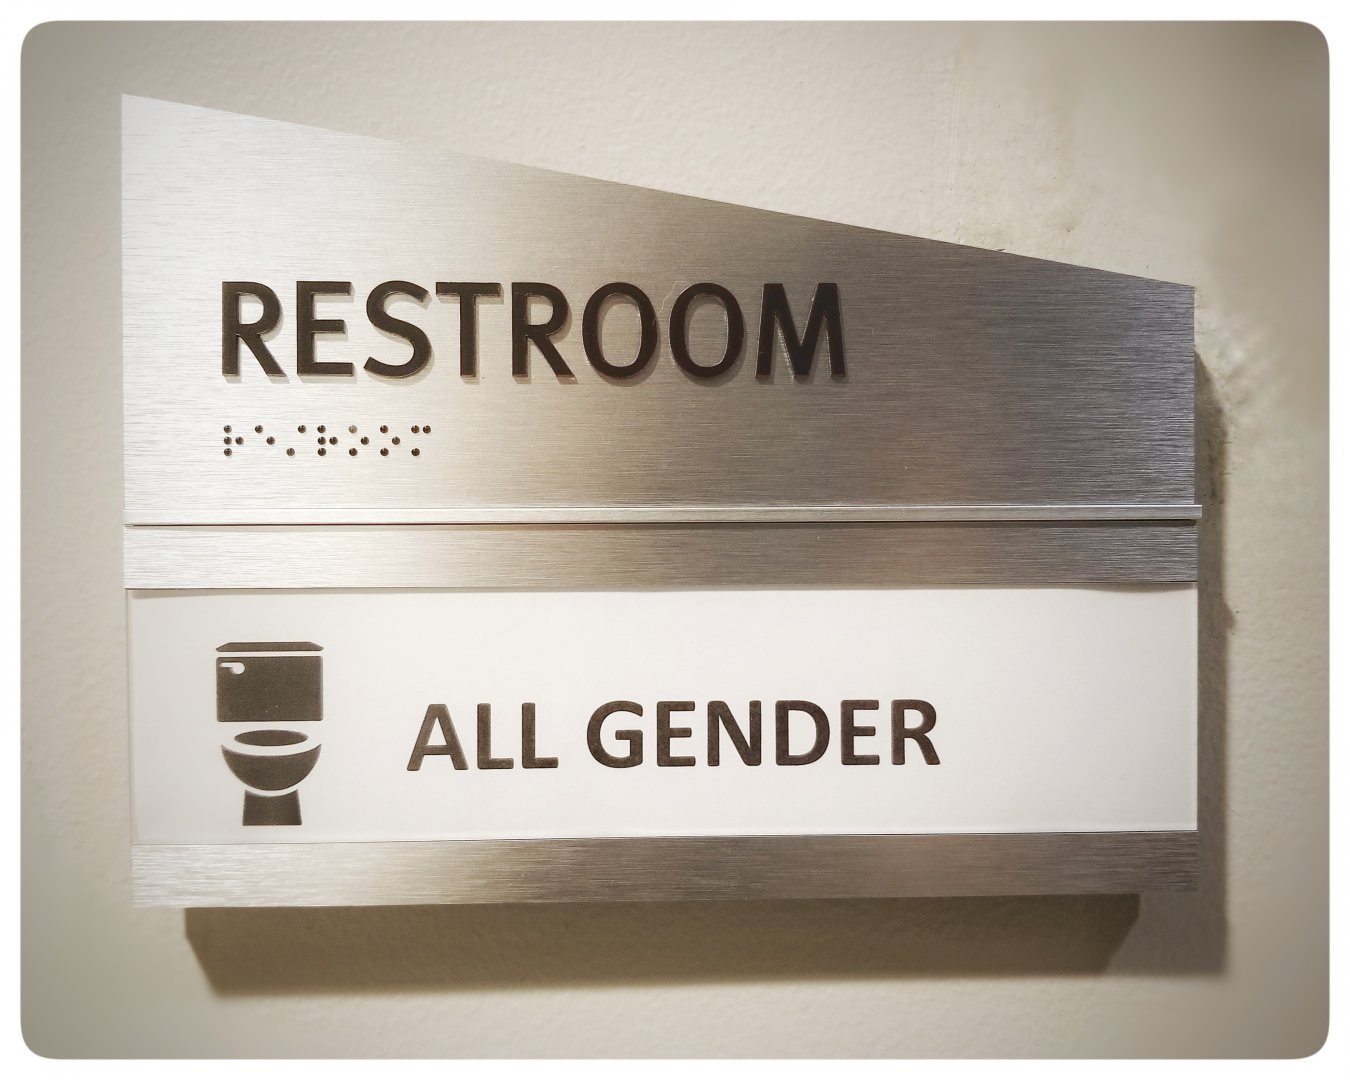 All Gender Restroom Sign